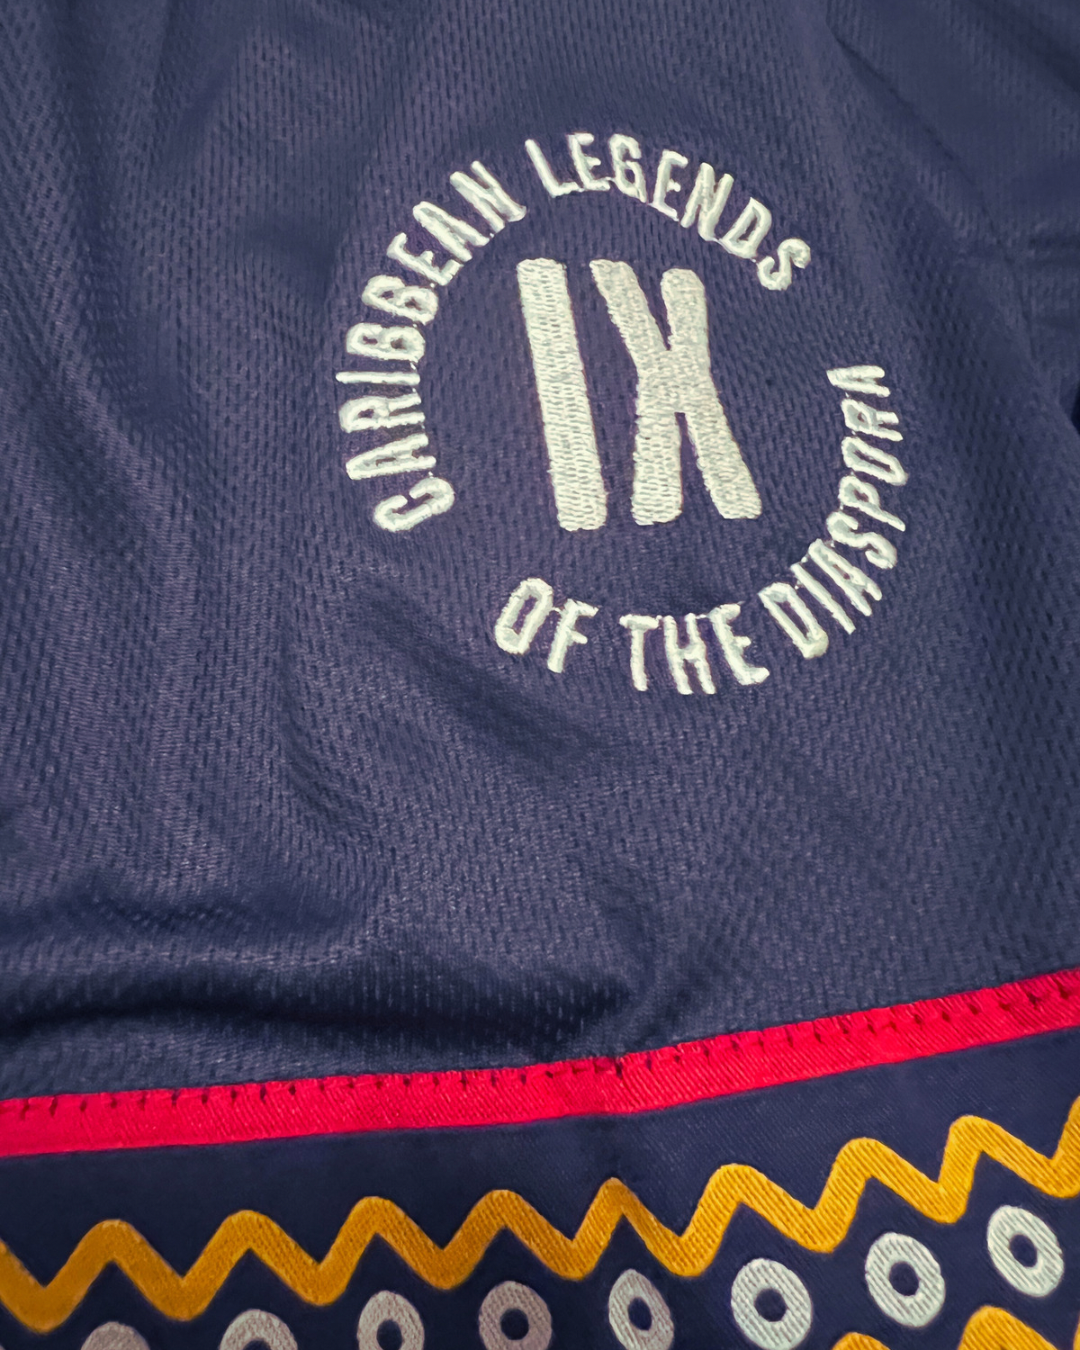 9 Legends - Star Culture Baseball Jersey